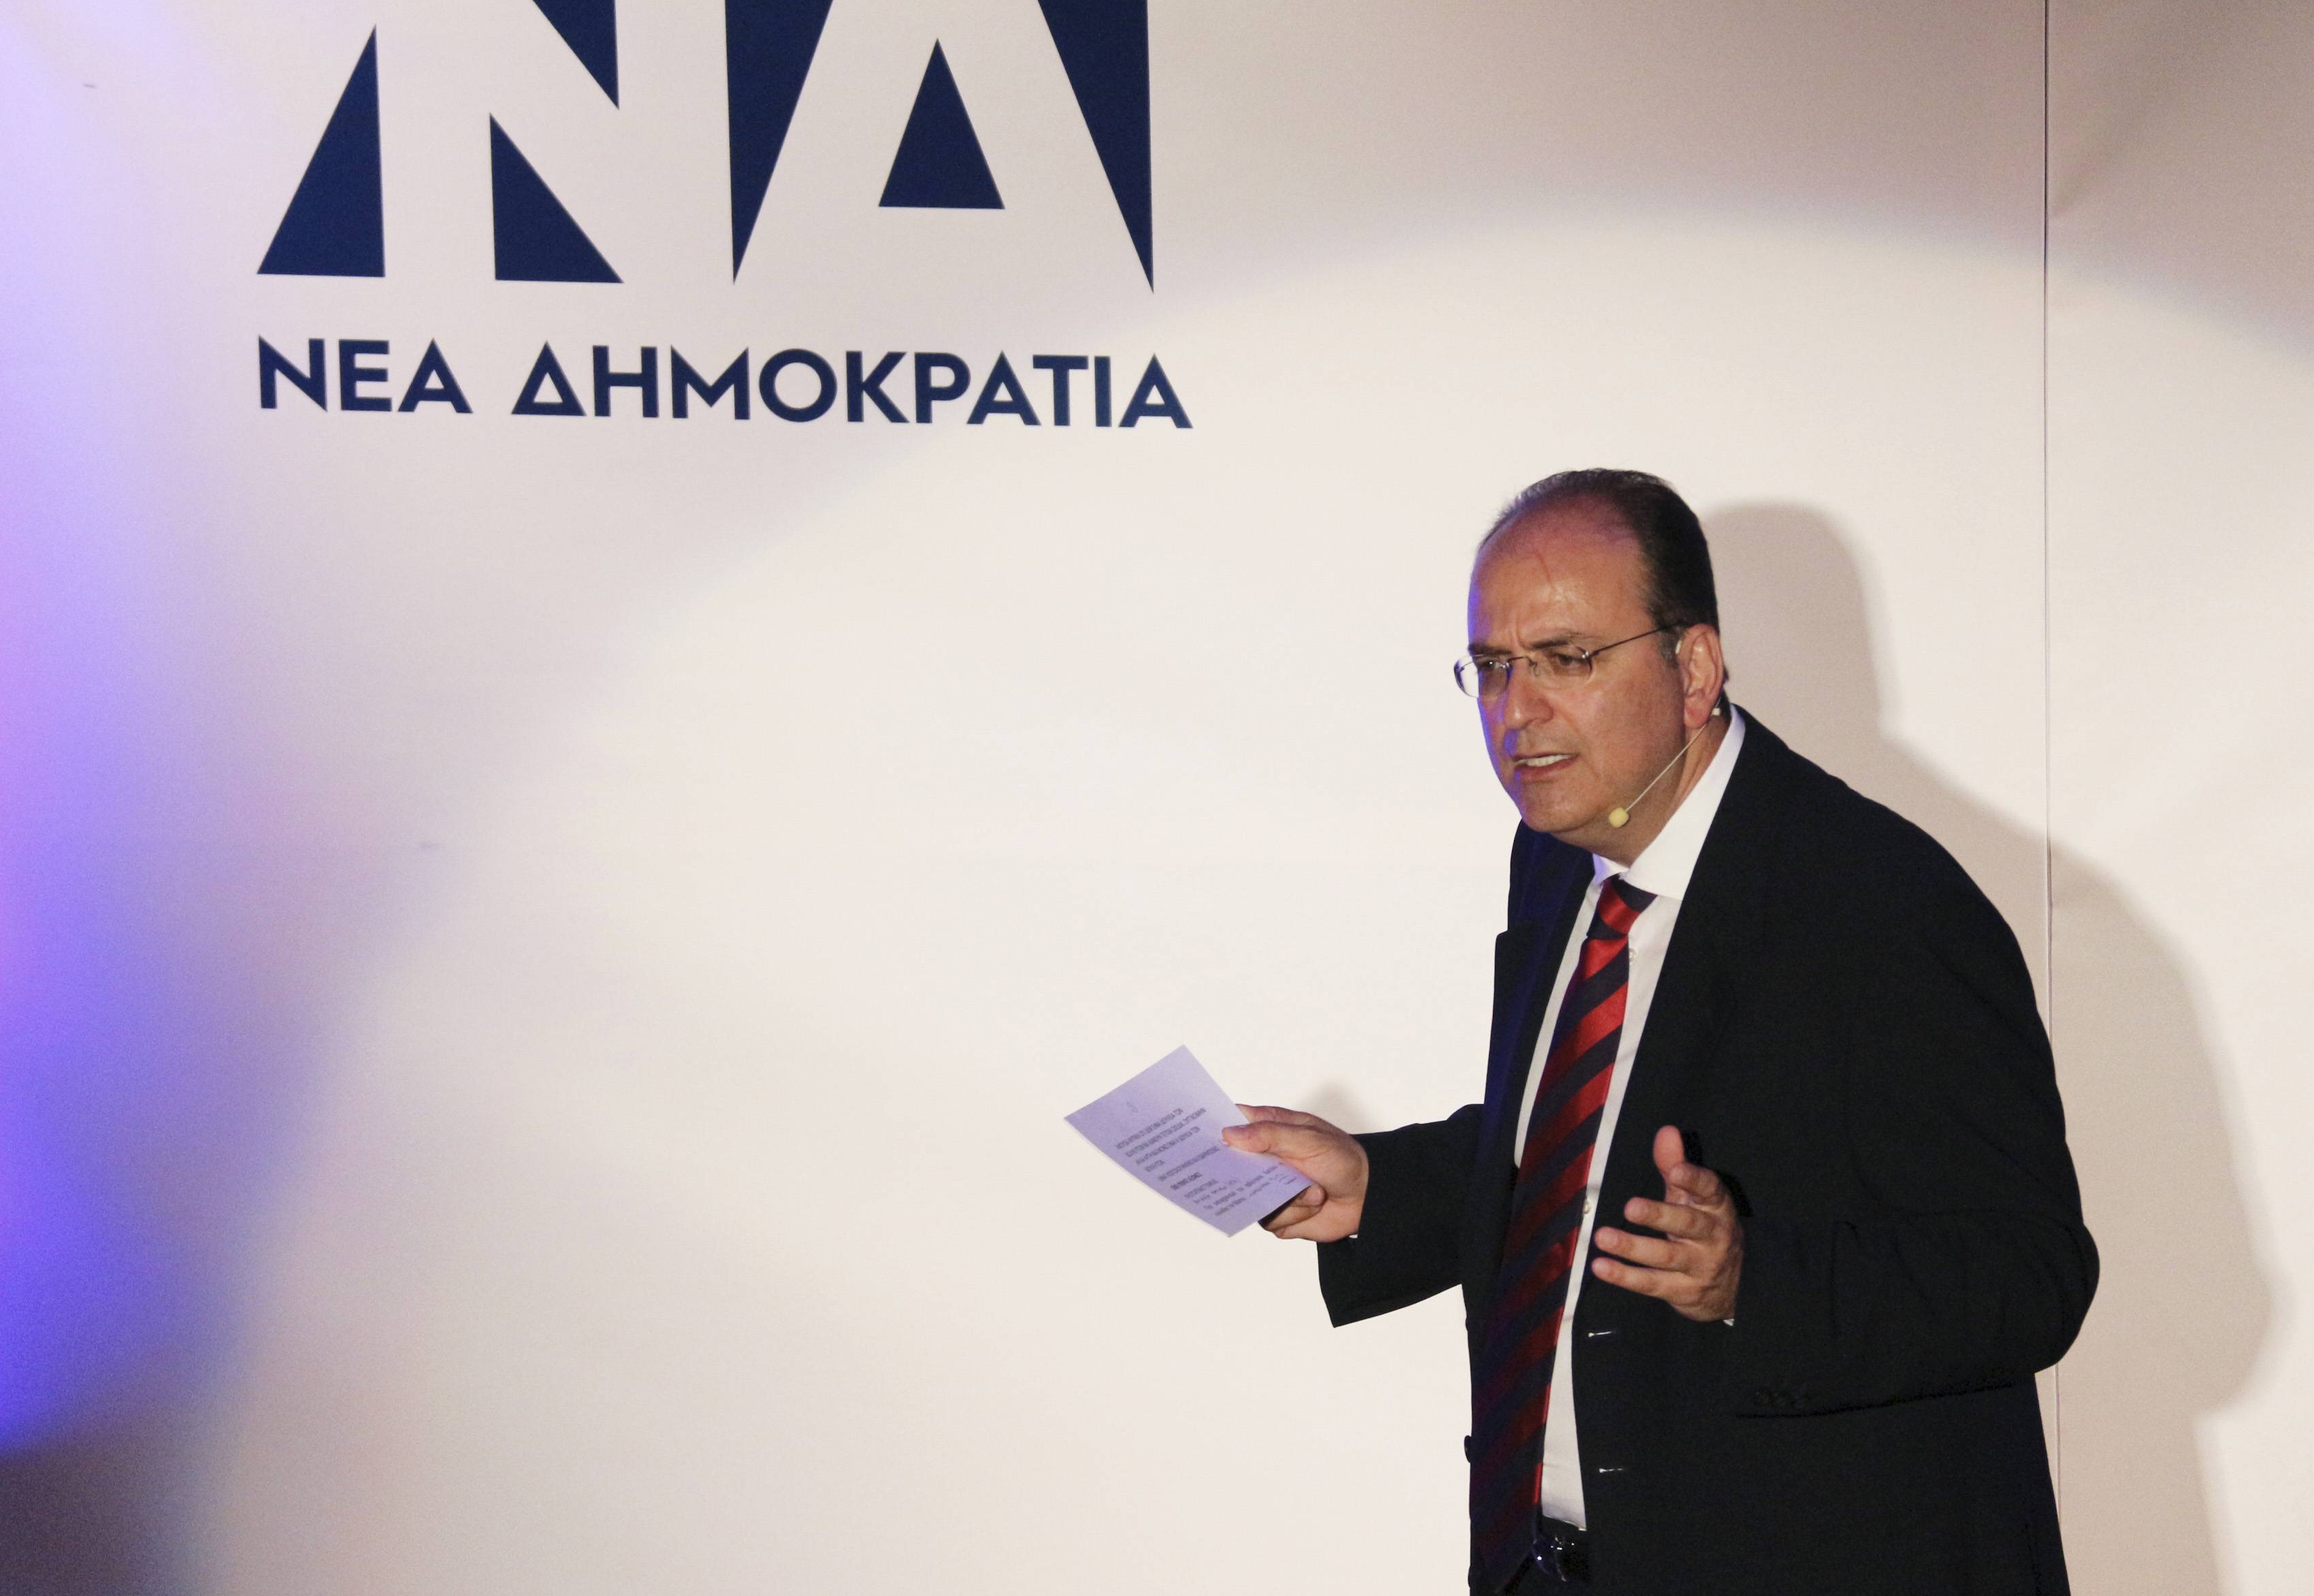  Μακάριος Λαζαρίδης:  «Στο DNA του ΣΥΡΙΖΑ είναι το μπάχαλο και το χάος, ενώ στης Κυβέρνησης είναι η τάξη και η νοικοκυροσύνη»